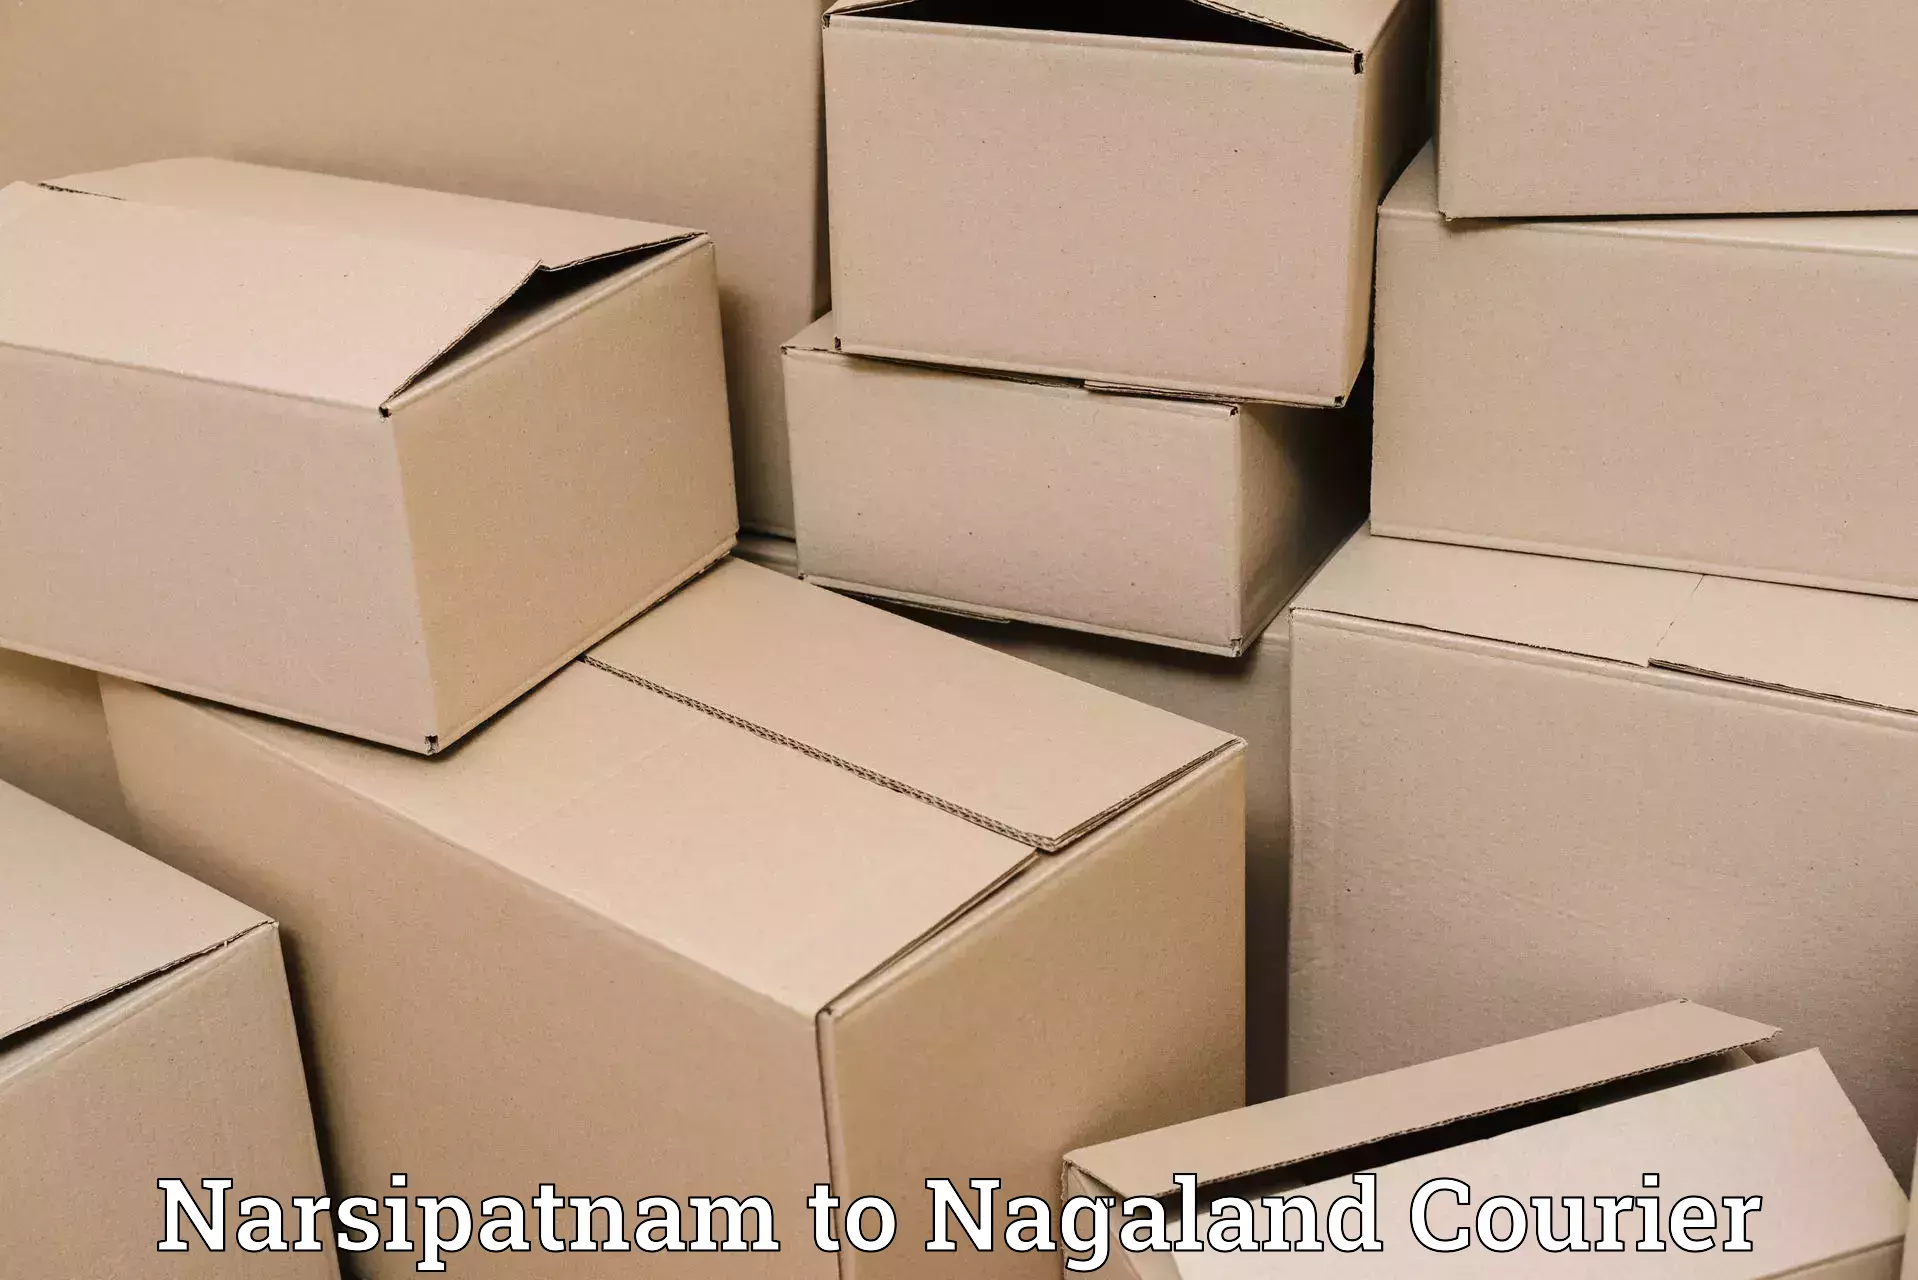 Nationwide shipping capabilities Narsipatnam to NIT Nagaland